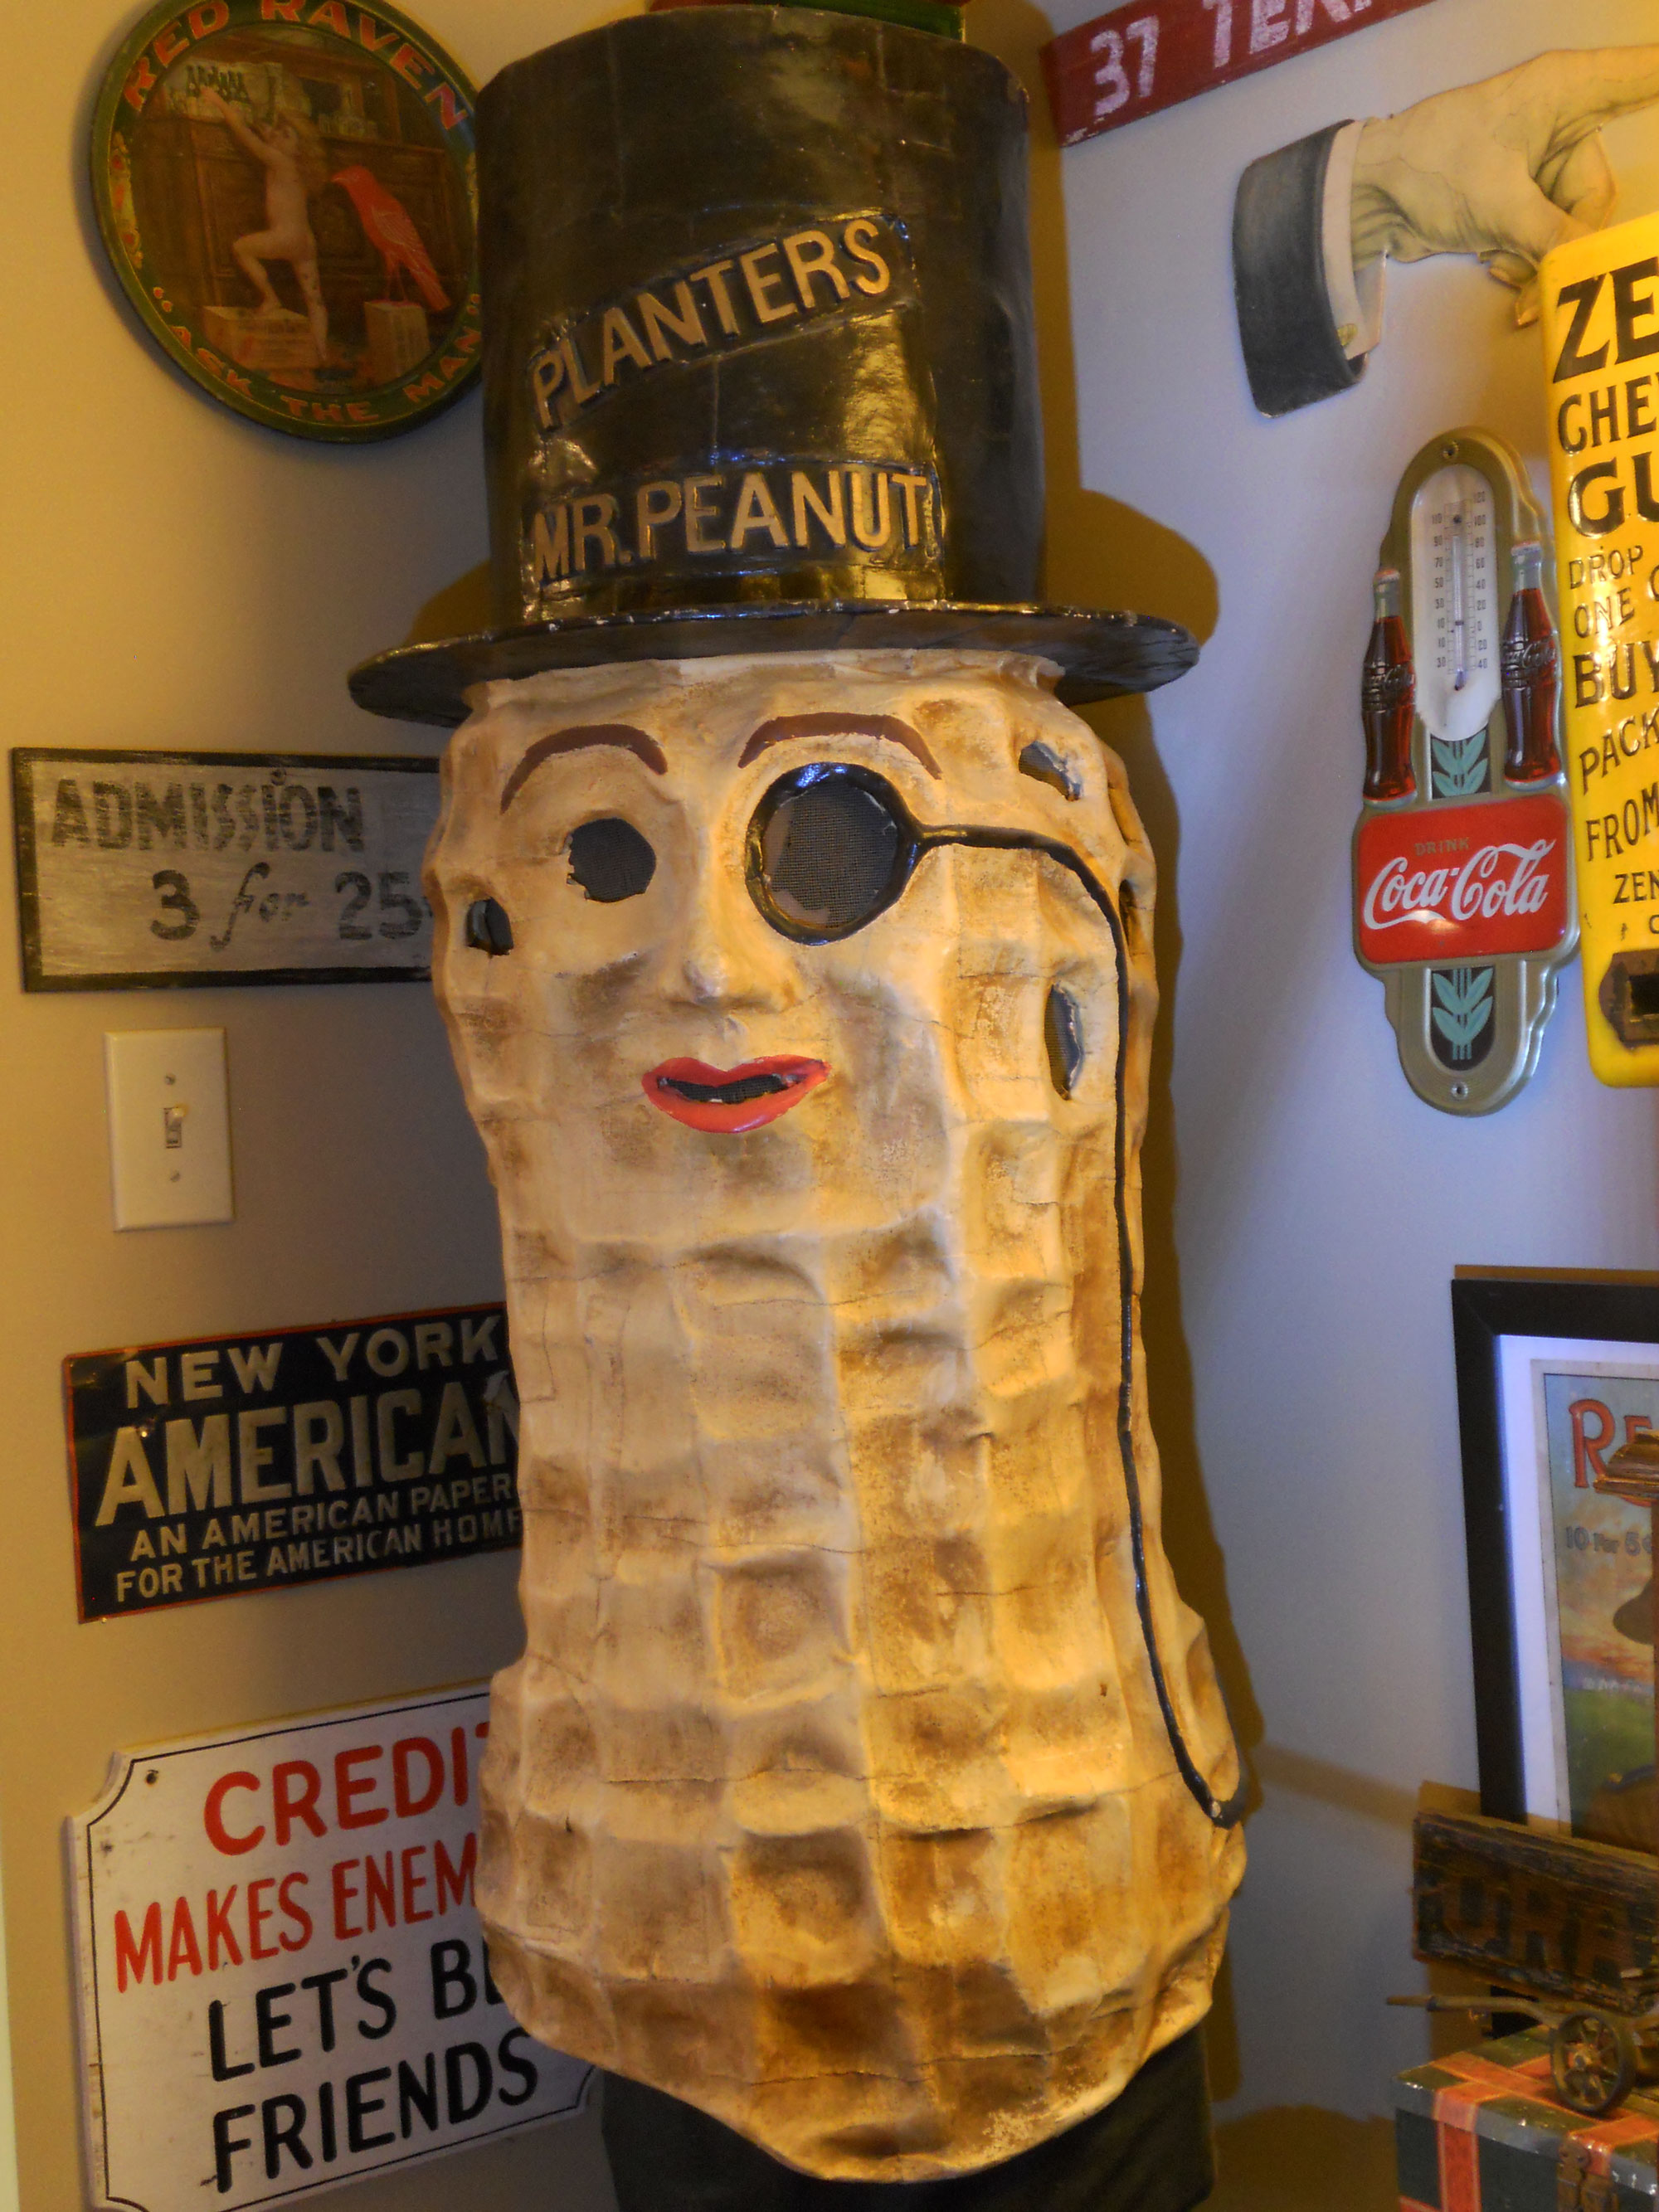 1000+ images about Mr. Peanut on Pinterest | Planters peanuts, Peanuts and Cookie jars